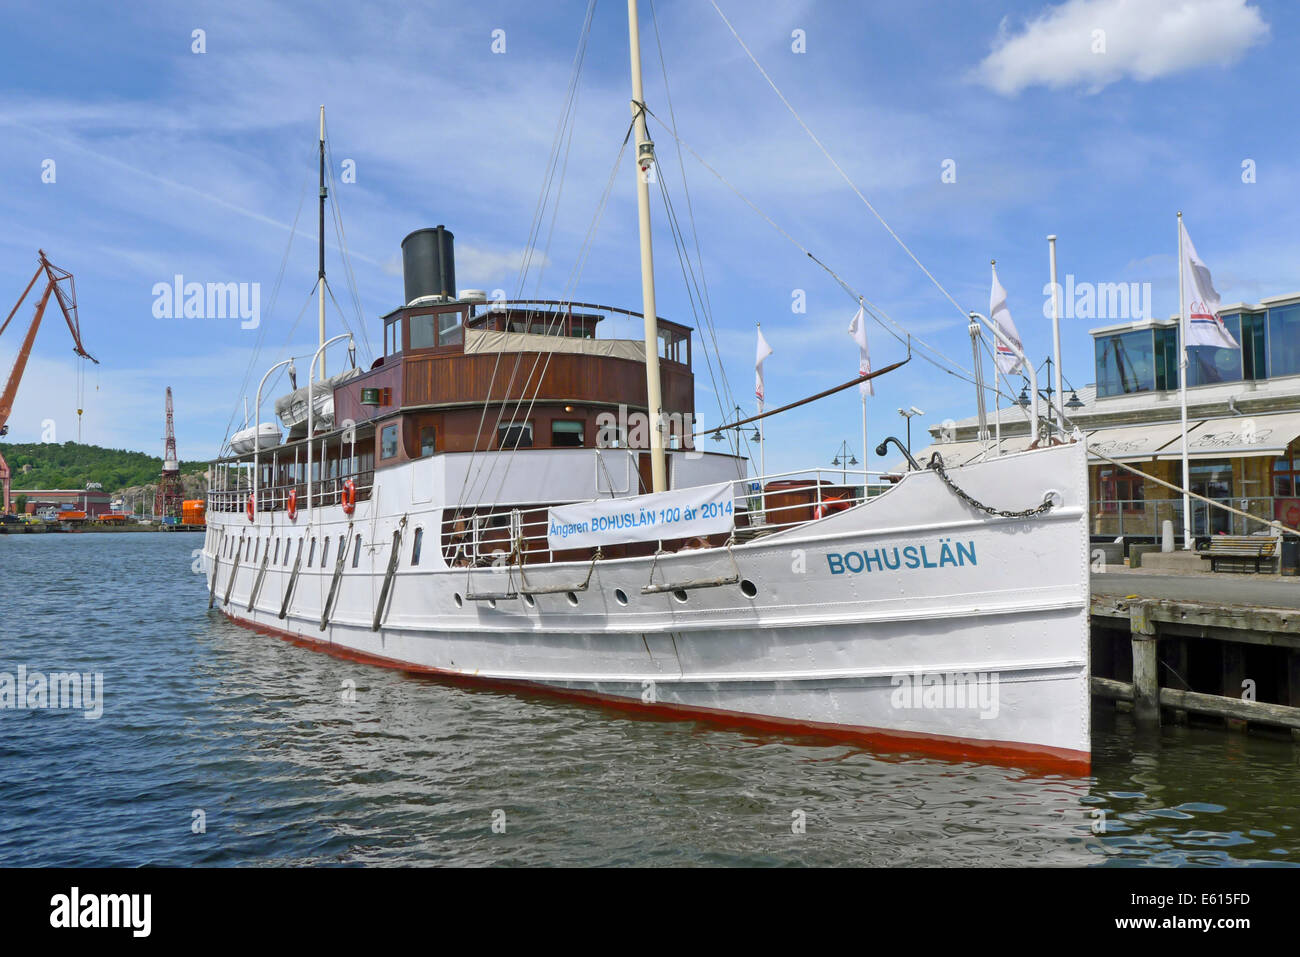 The Steamer BOHUSLÄN moored at Packhuskajen in Göteborg harbour Sweden Stock Photo